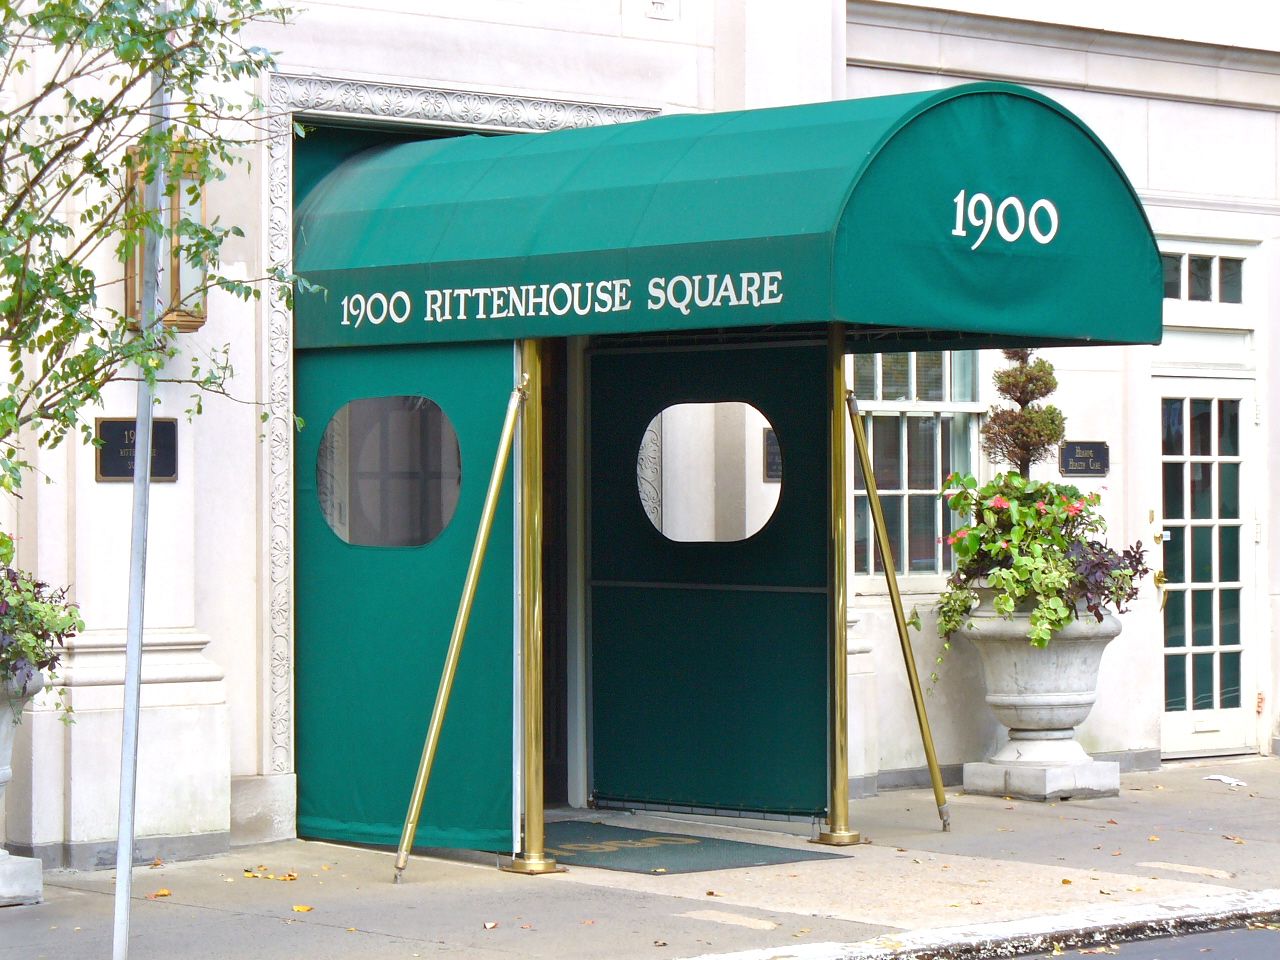 1900 Rittenhouse Square entrance condos